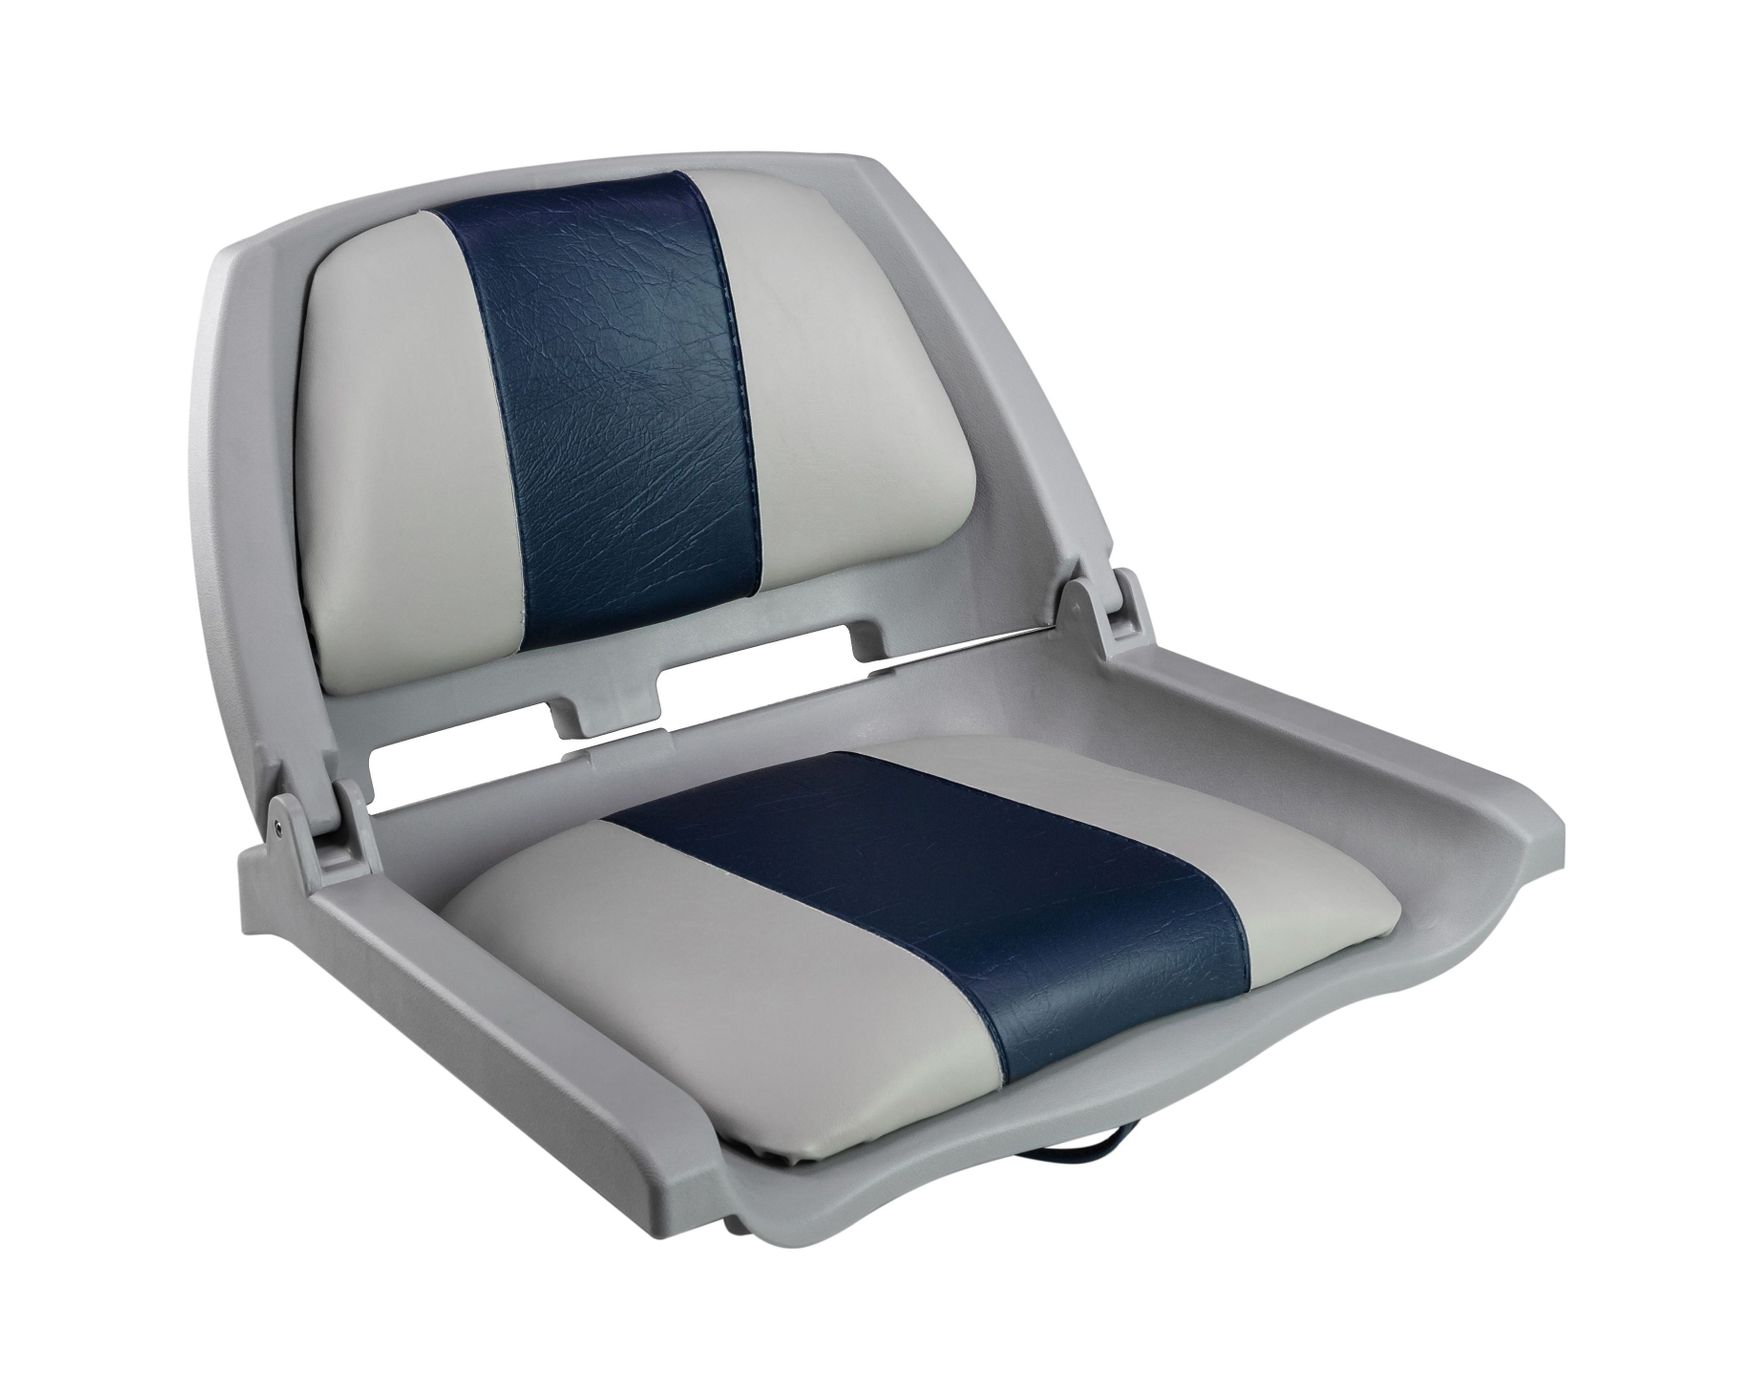 Кресло складное мягкое TRAVELER, цвет серый/синий 1061121C весы ювелирные mertech m er 123 аcf 1500 05 sensomatic серый синий